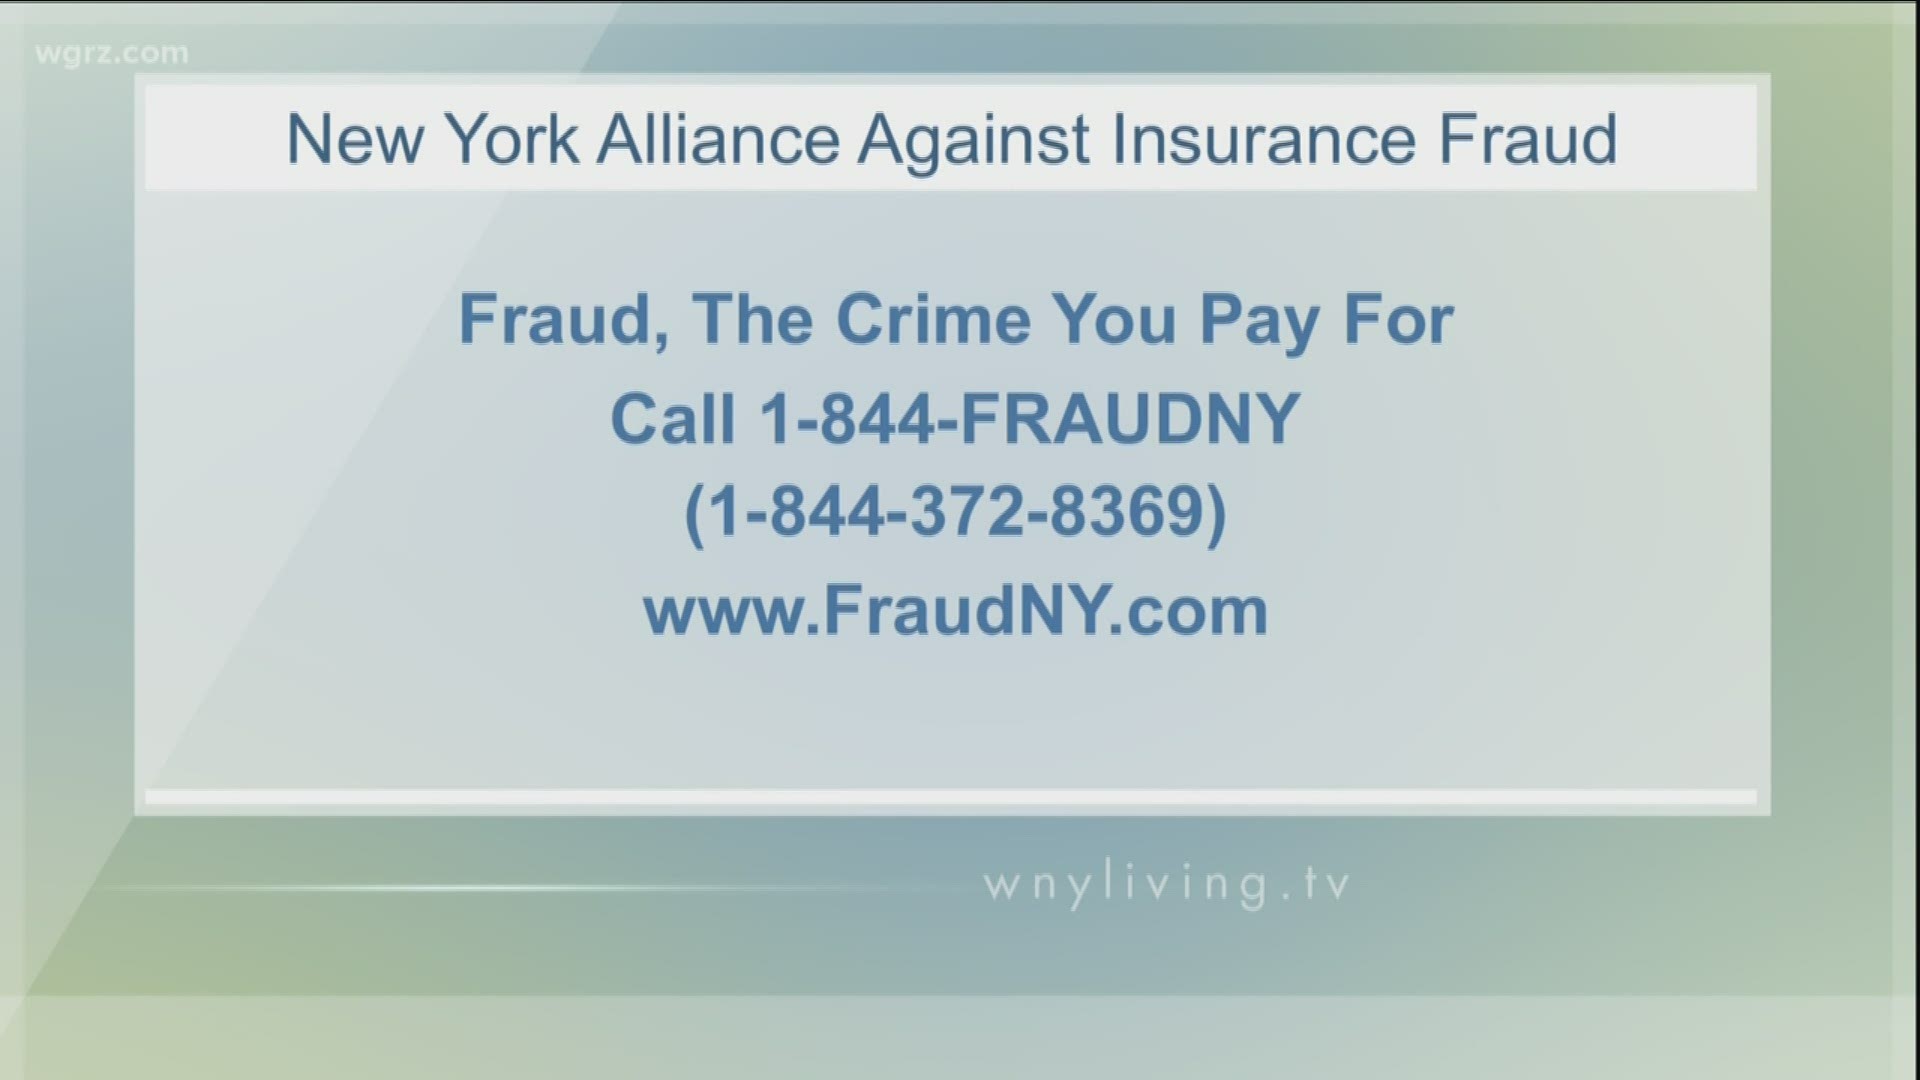 WNY Living - June 29 - New York Alliance Against Insurance Fraud (SPONSORED CONTENT)